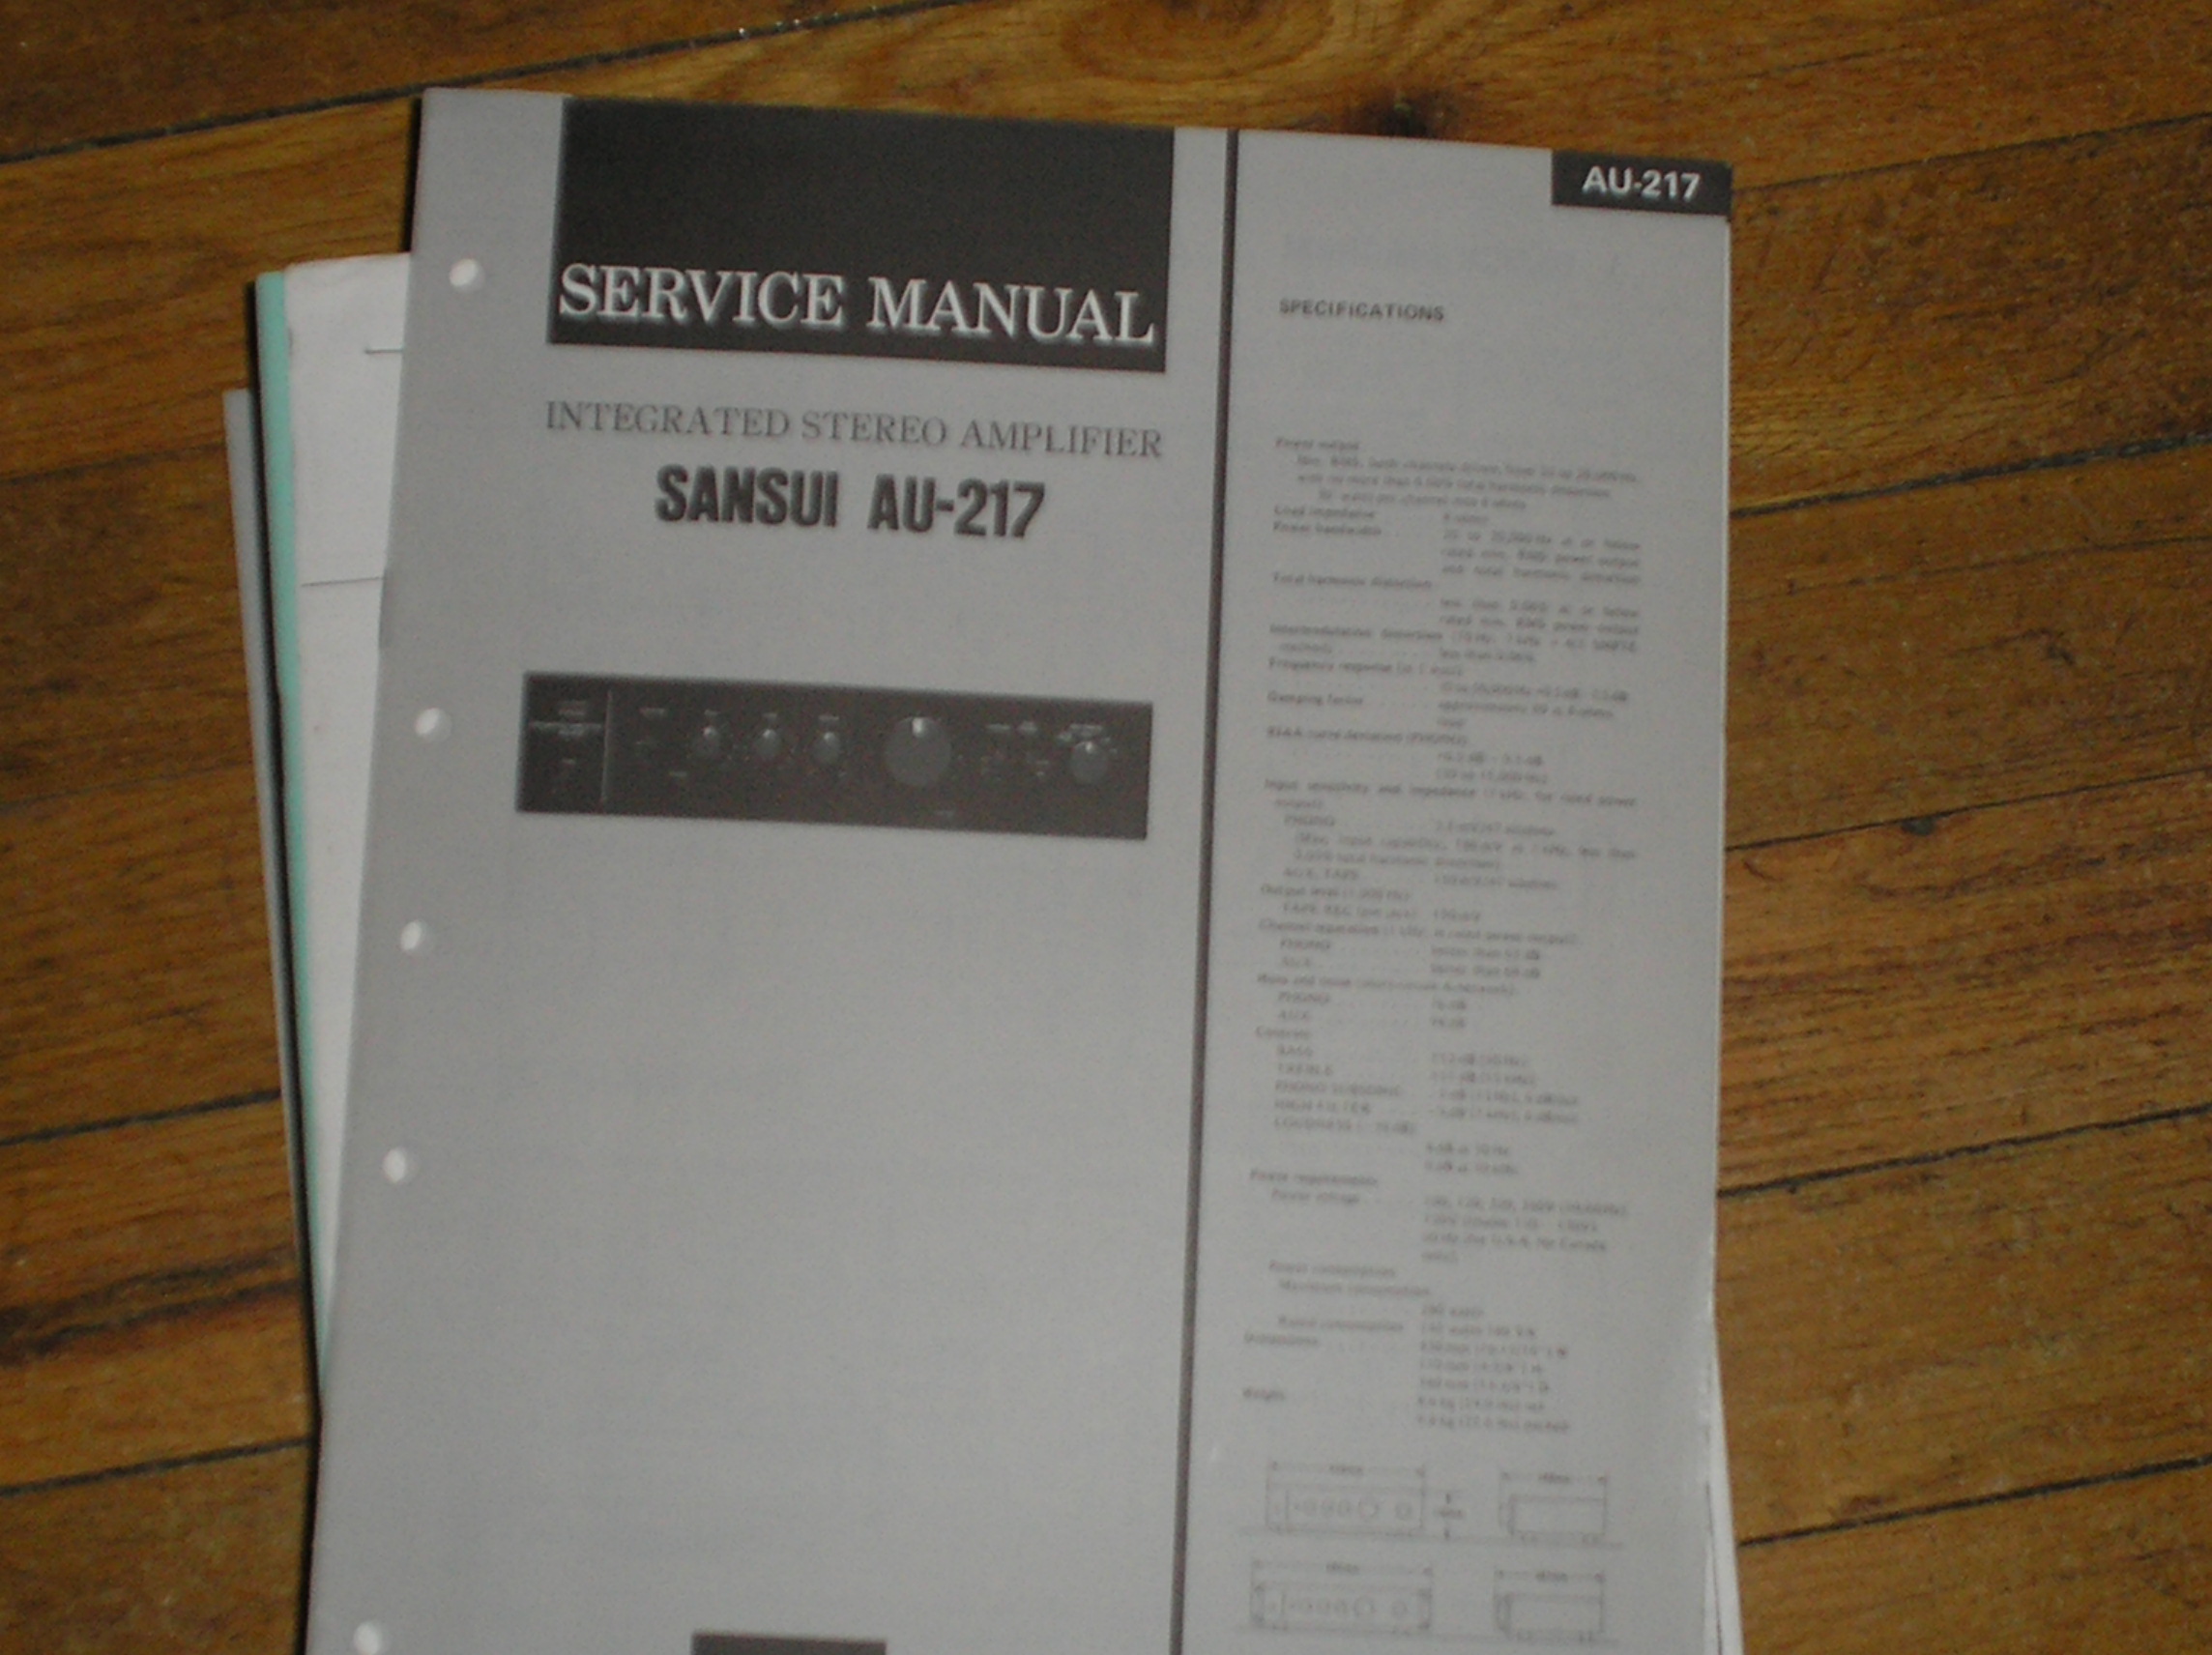 AU-217 Amplifier Service Manual